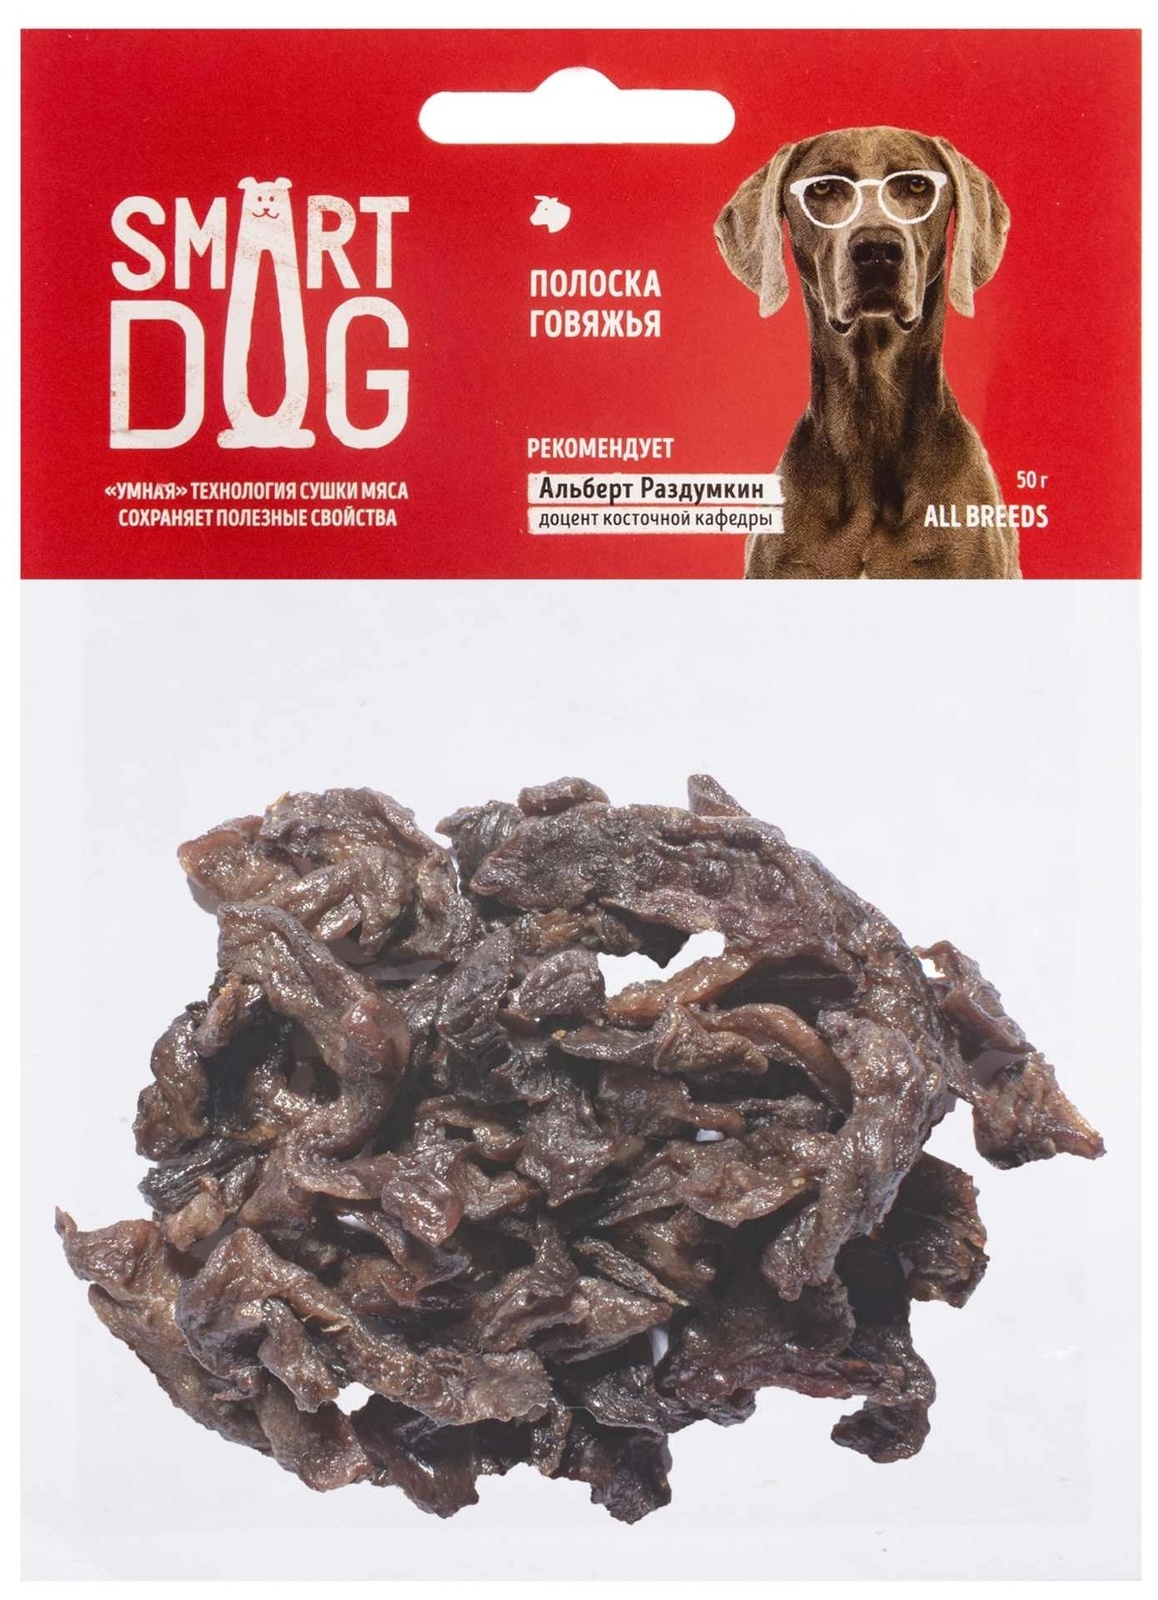 Smart Dog лакомства Smart Dog лакомства говяжья полоска (50 г) smart dog лакомства smart dog лакомства семенники бычьи 50 г